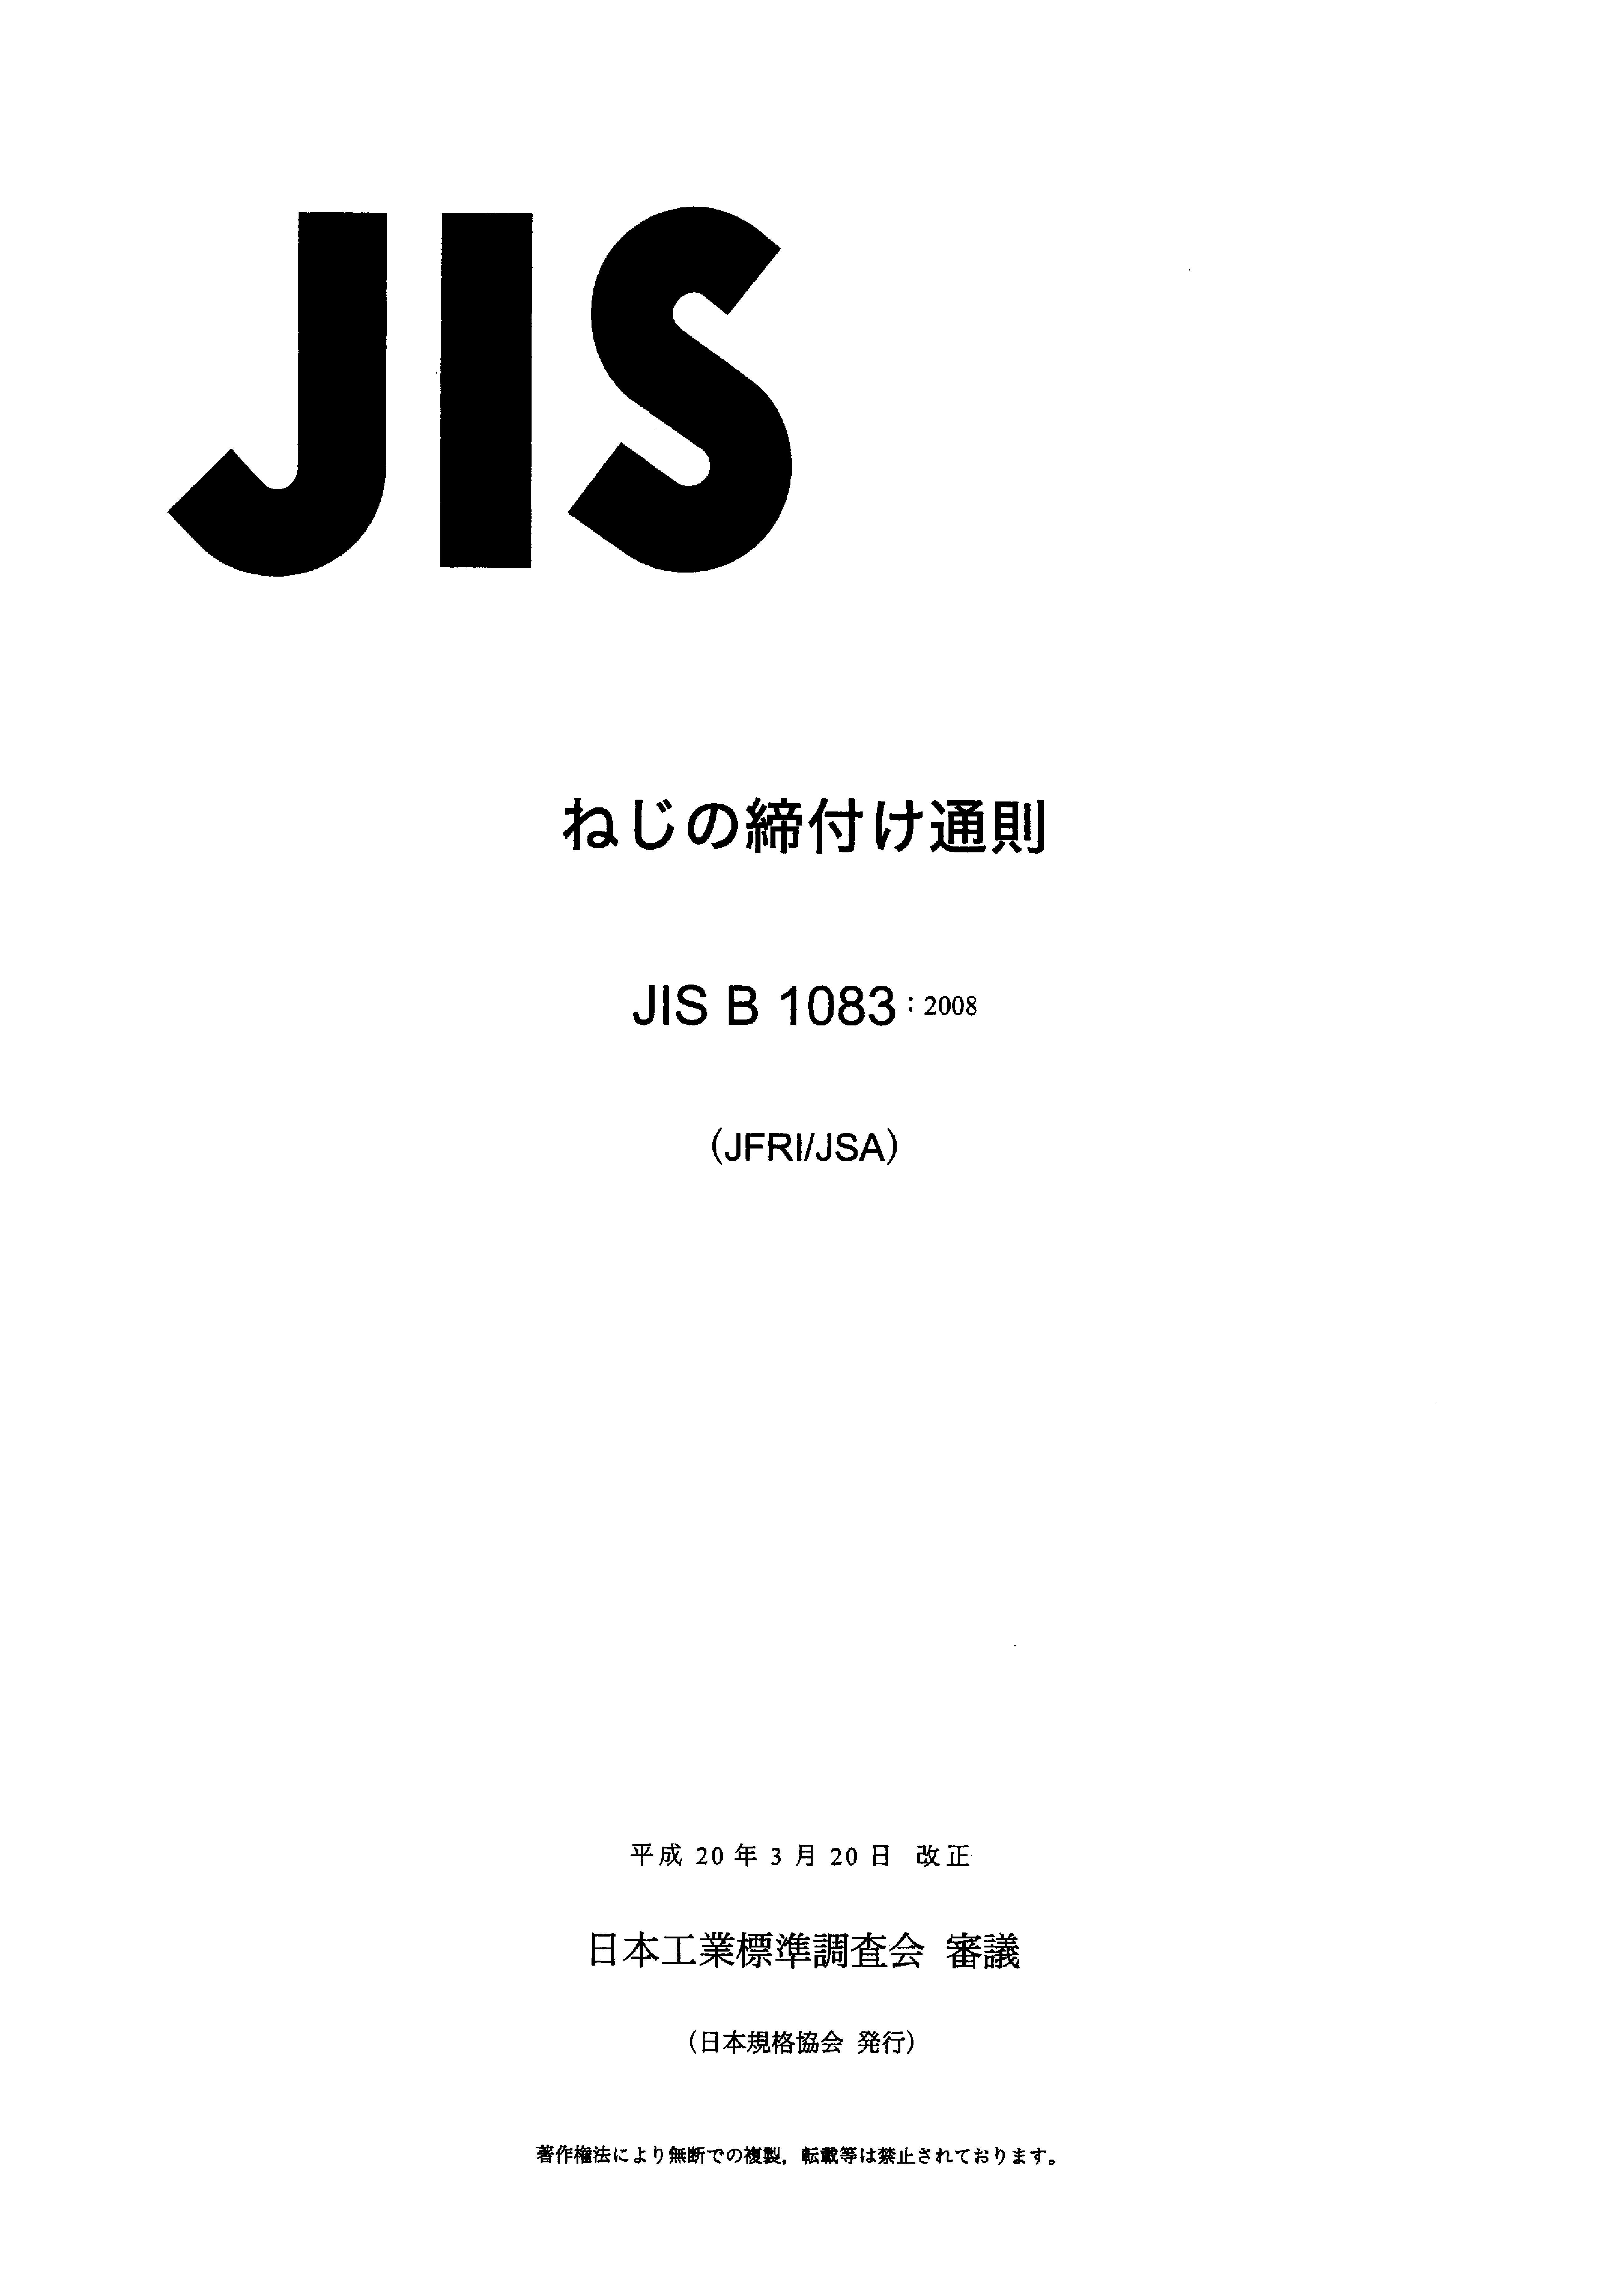 JIS B 1083:2008封面图